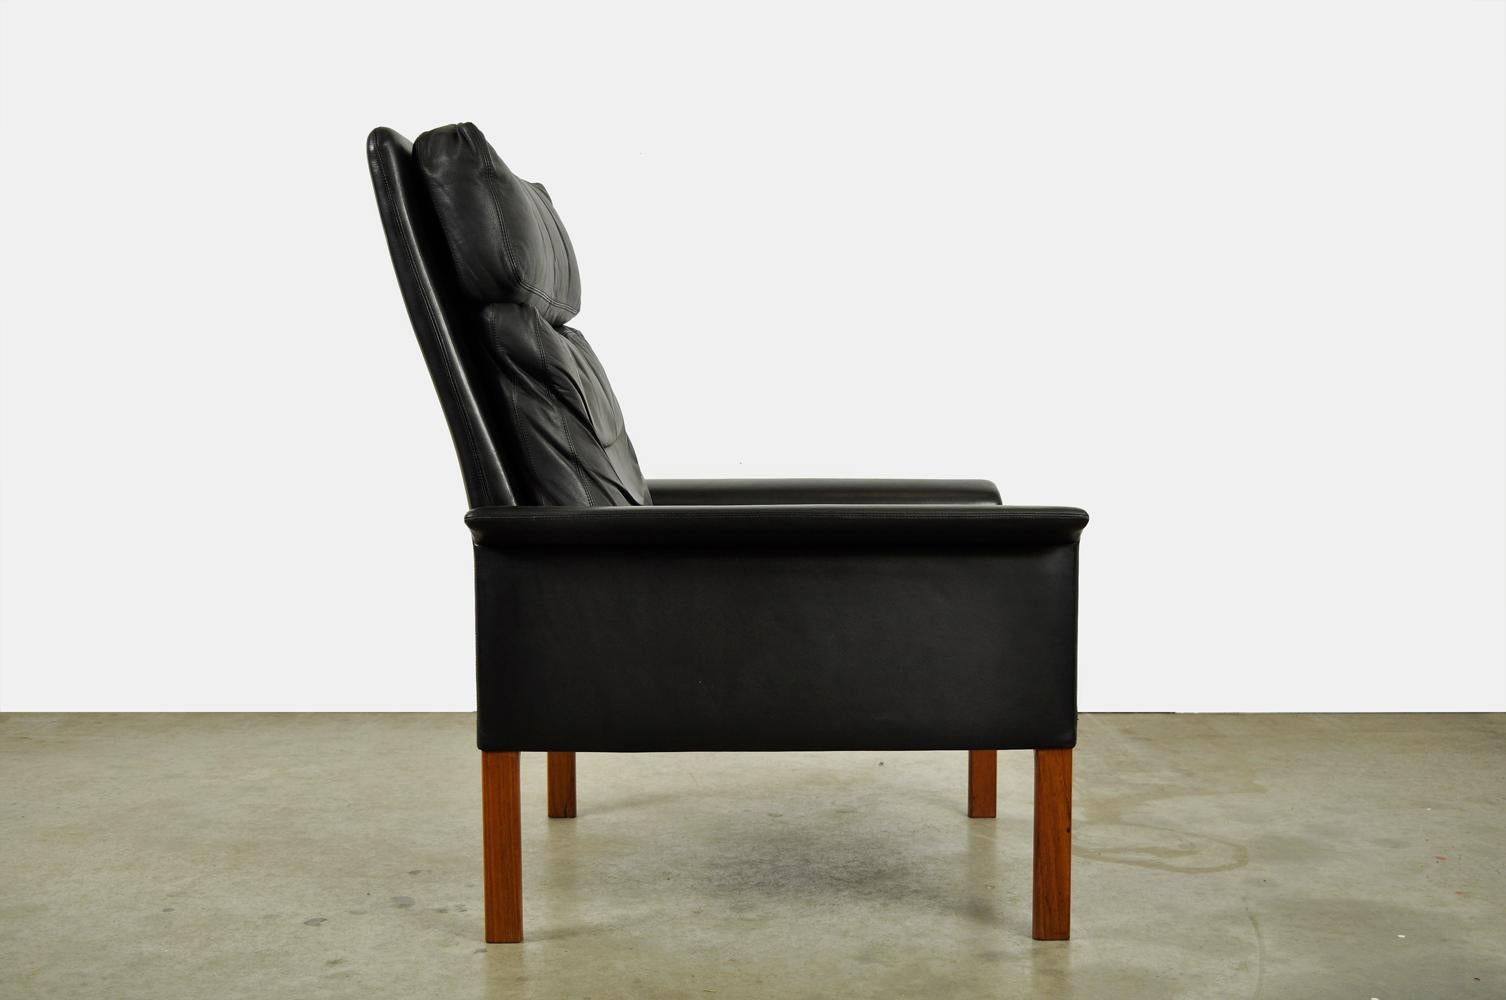 Klassischer Vintage-Sessel (hohes Modell), entworfen von Hans Olsen und hergestellt von CS Møbler Glostrup, 1960er Jahre. Schöner Herrensessel aus schwarzem Leder, der auf quadratischen Teakholzbeinen steht. Der Sessel hat ein loses Lederrücken-,